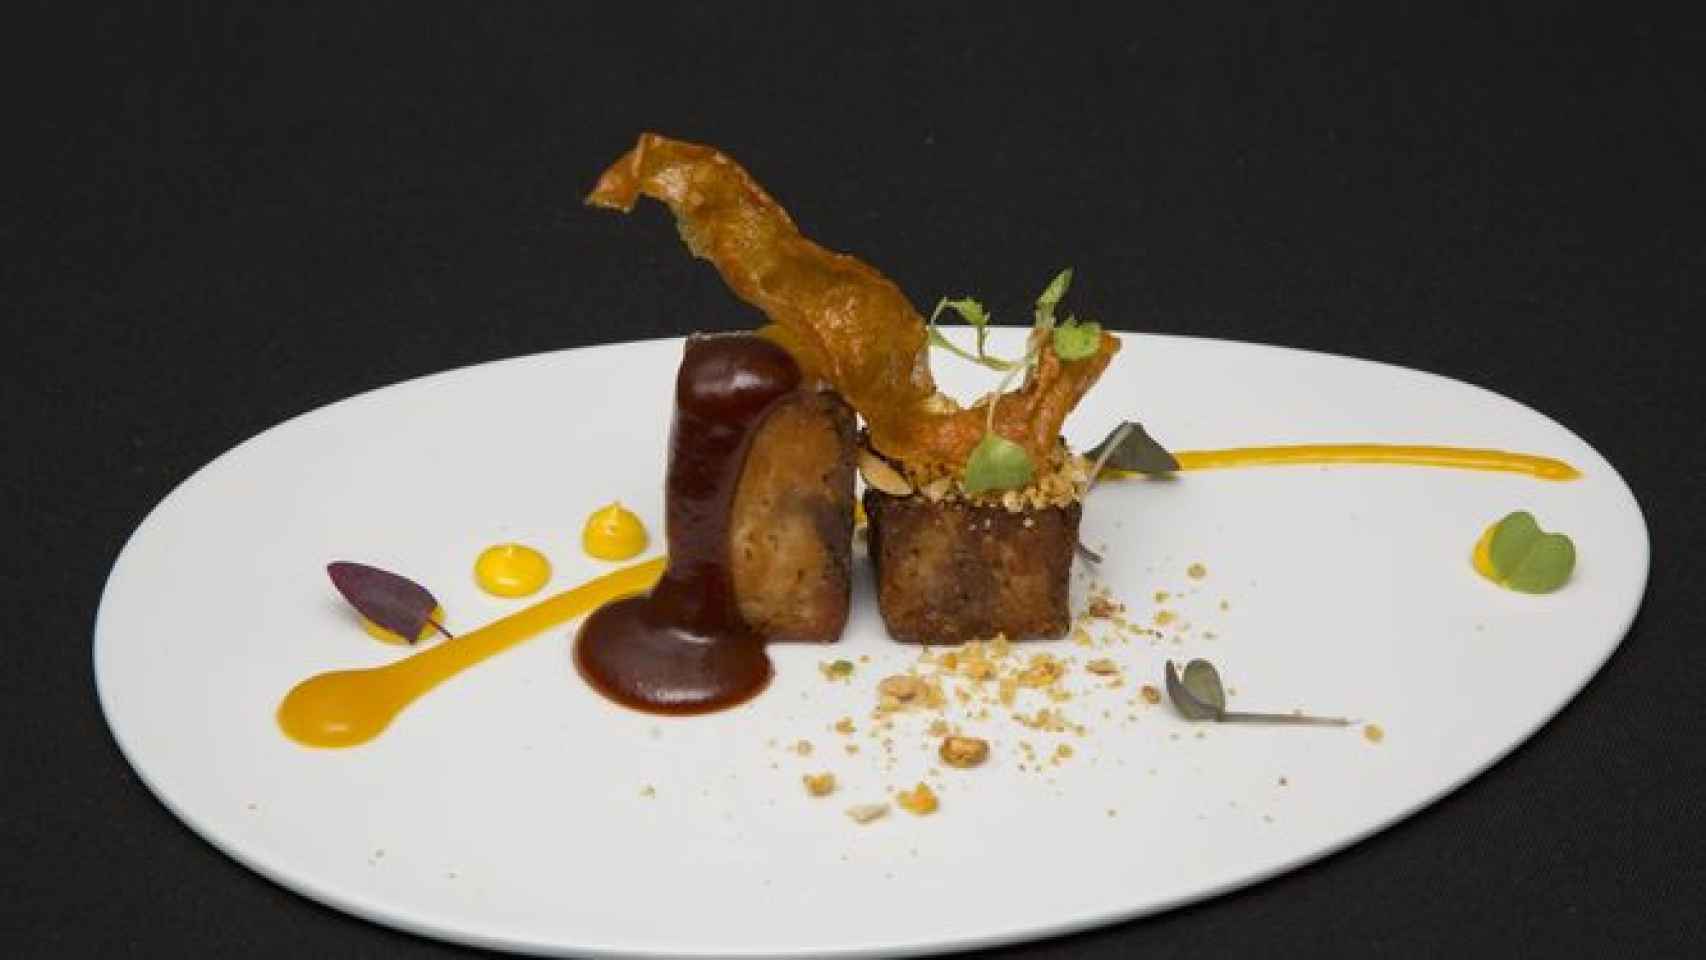 'Gastrimàrgia', el plato de Antonio Jiménez, de El Tastet del Reng, de Balaguer, con el que ha ganado el premio a la 'Tapa del año' en Sitges / CG